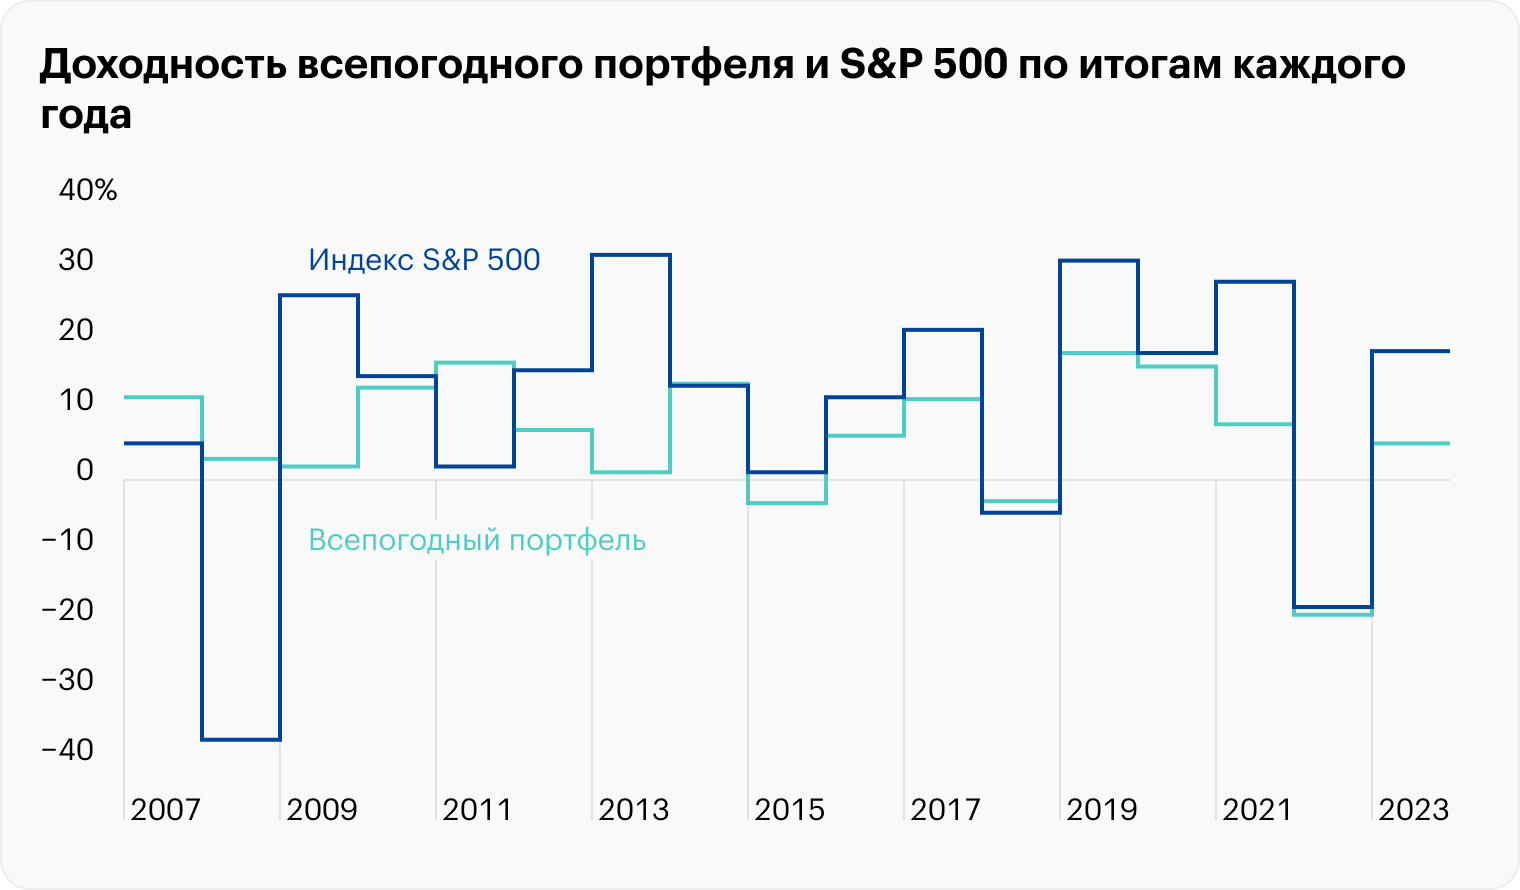 По итогам 2015 и 2022 годов всепогодный портфель снизился больше, чем S&P 500. В остальные годы падений рынка акций США он проявил себя как надо. А в годы роста он был закономерно хуже бенчмарка. Источник: Источник: Portfolio Visualizer